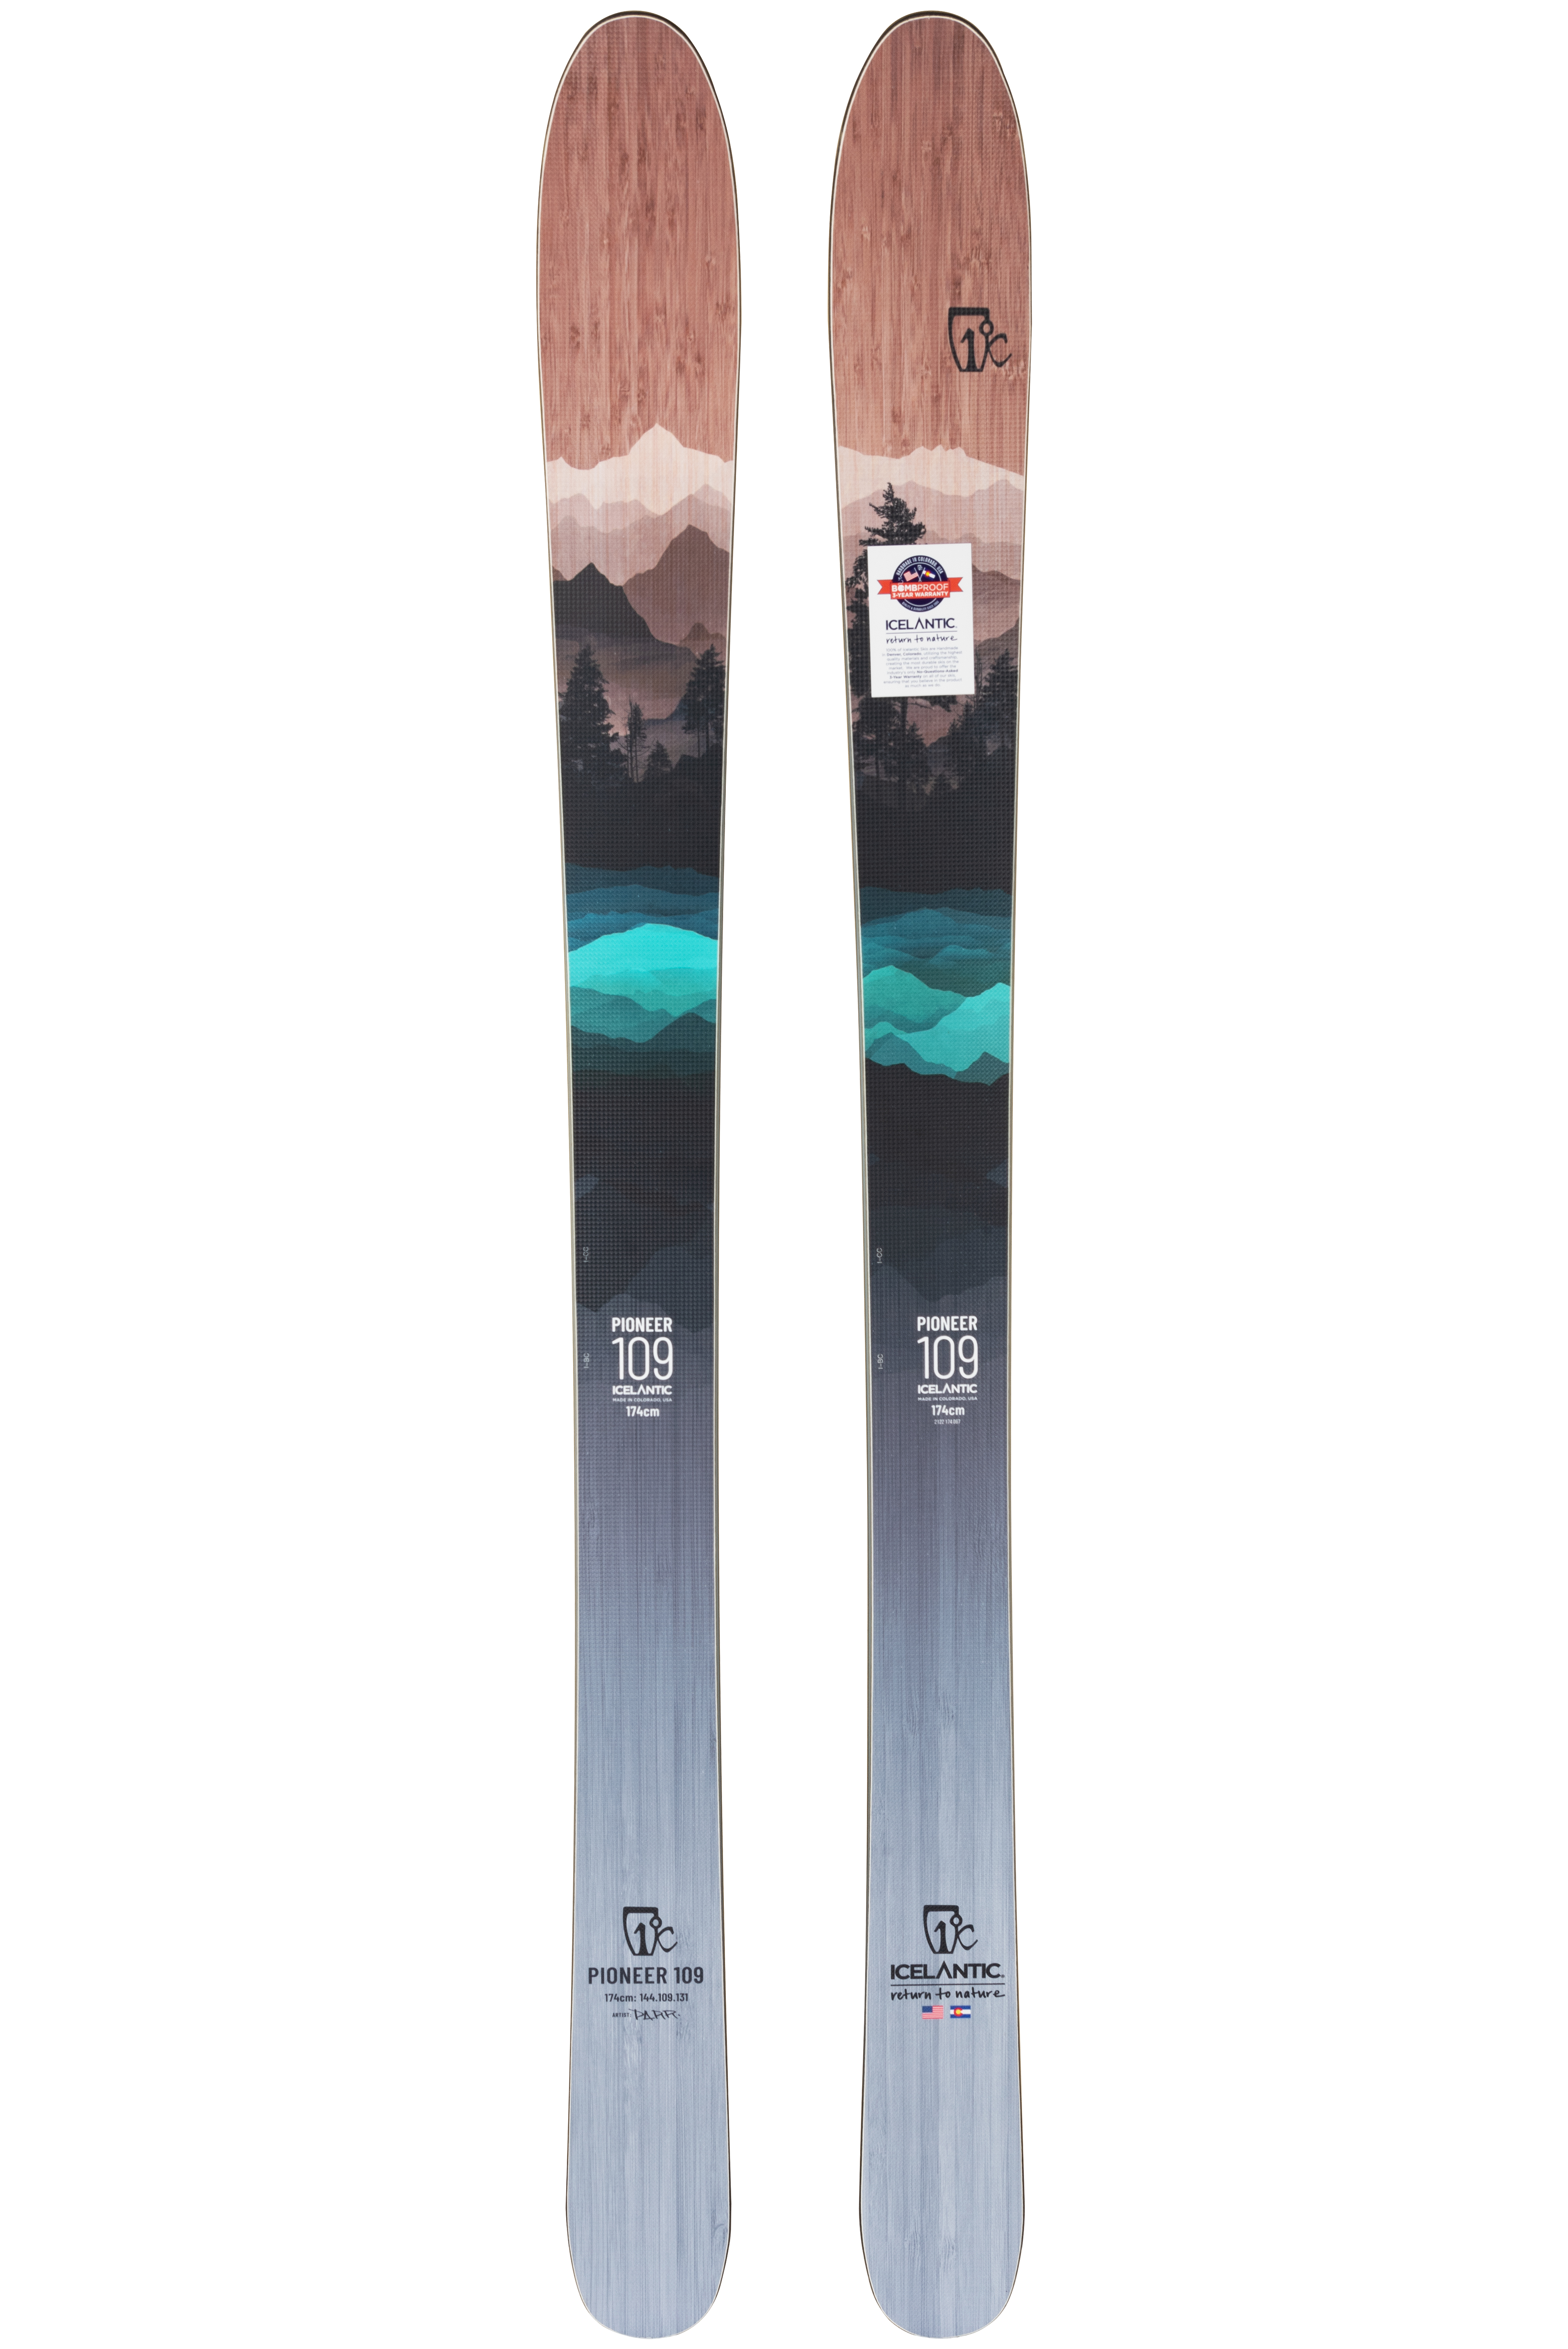 Лыжи с камбером Icelantic Pioneer 109 2021/2022 182cm